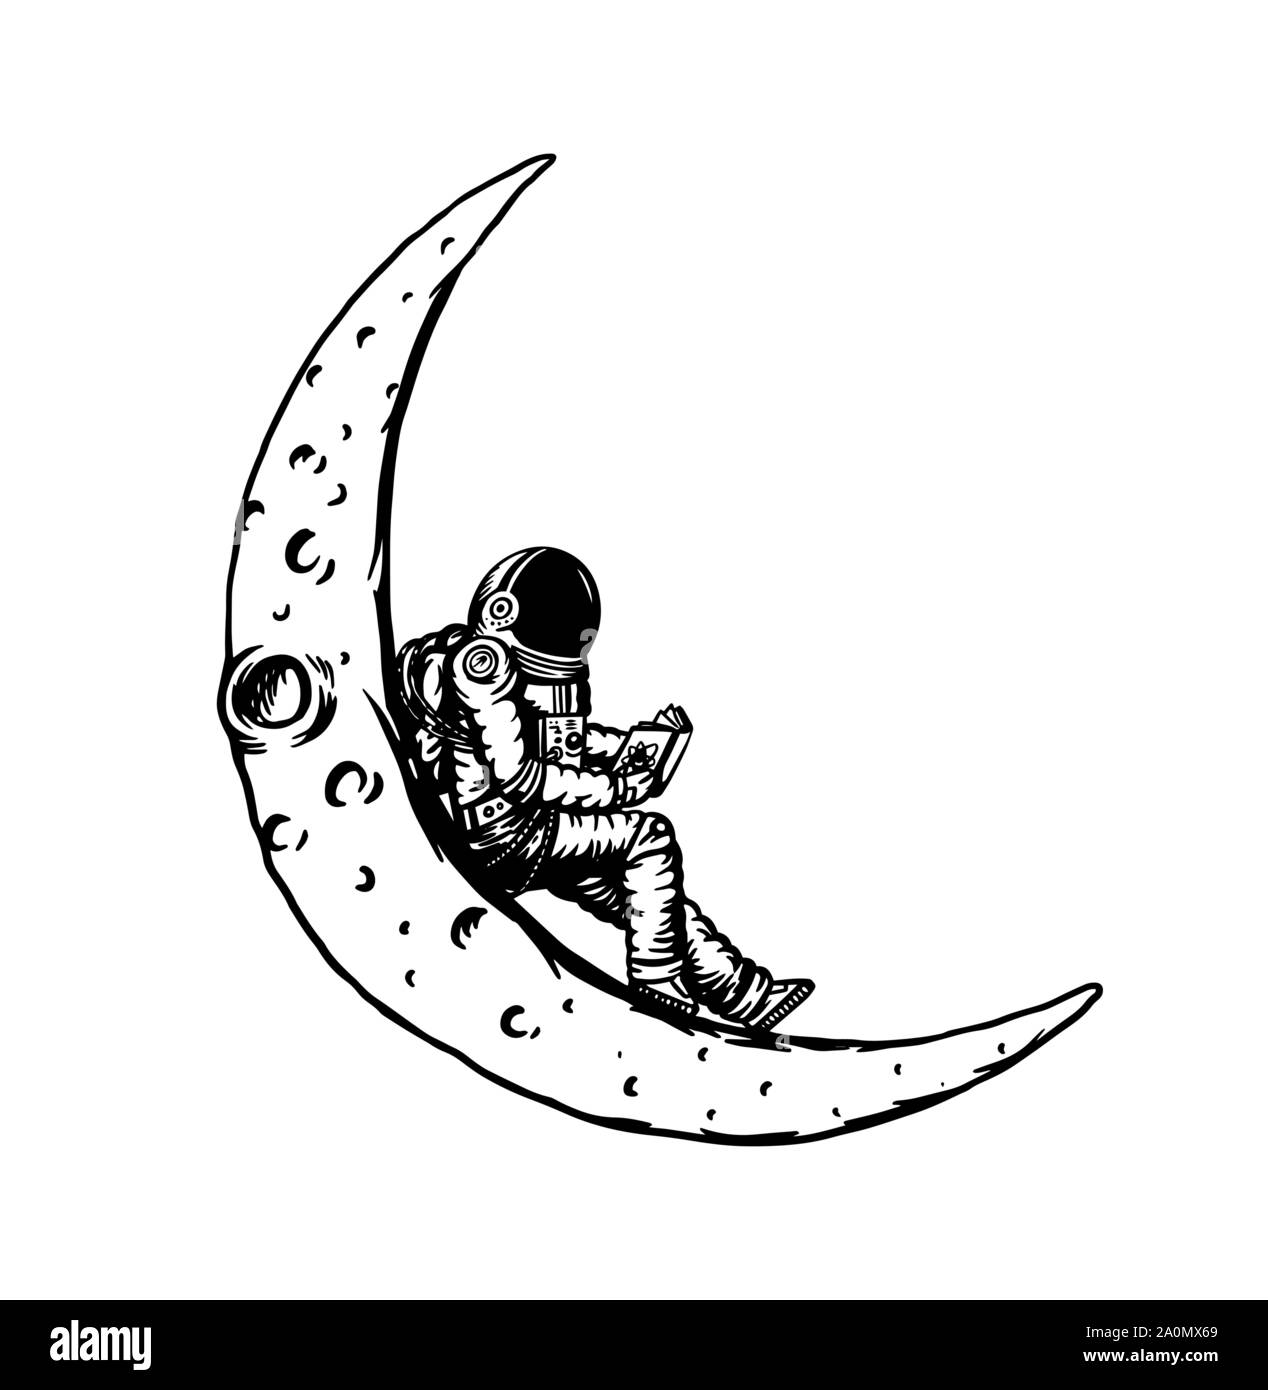 Planeur Spaceman dans l'espace. L'astronaute sur la lune. L'homme dans le système solaire. Vieux croquis dessinés à la main, gravée dans un style vintage. Illustration de Vecteur